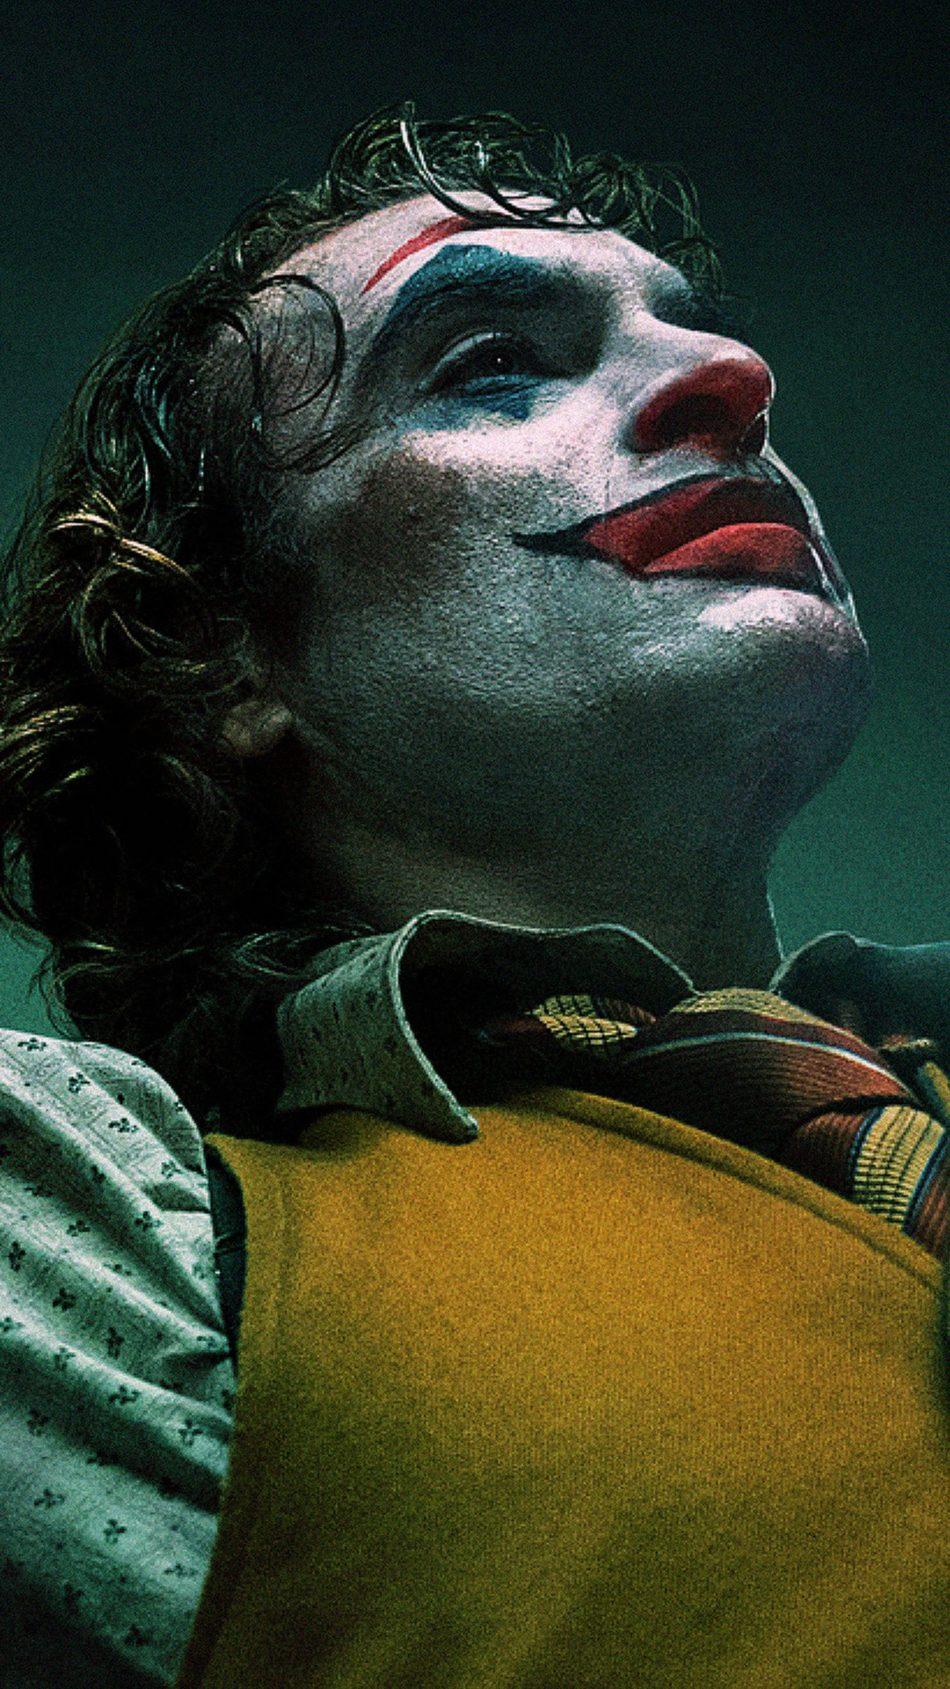 Free download Download Joaquin Phoenix Joker 2019 Movie Pure 4K